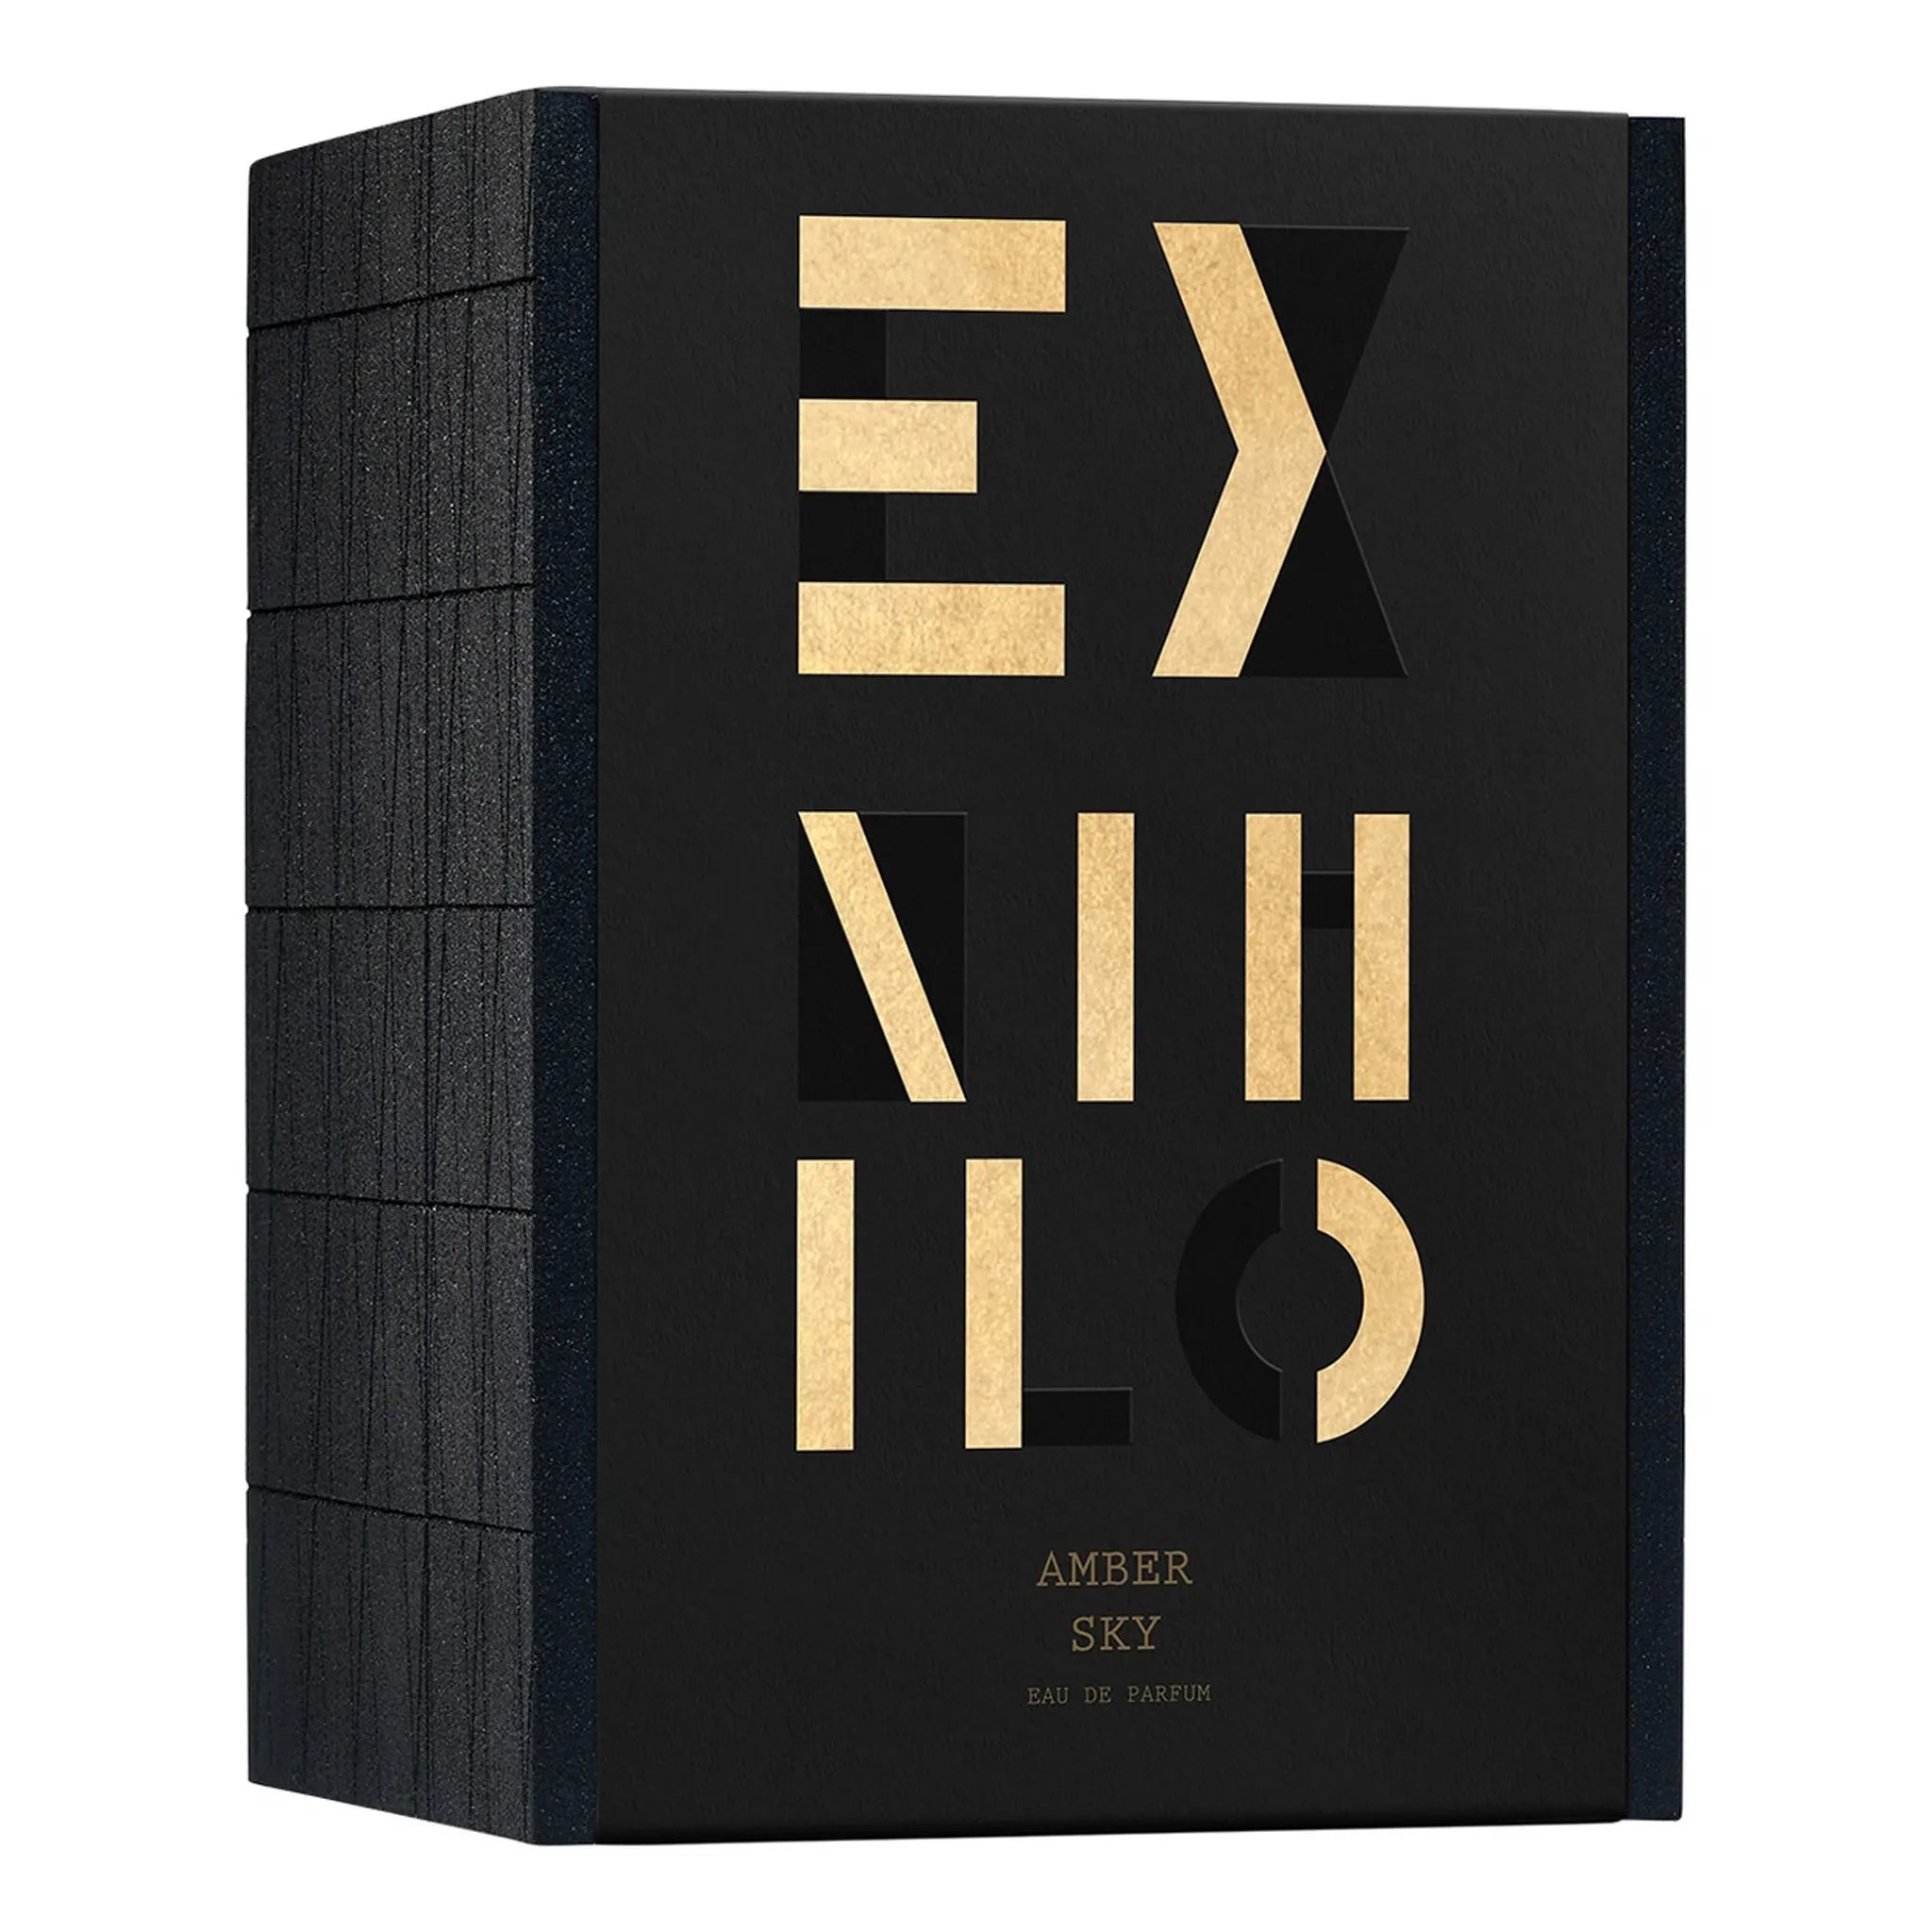 Box view of Ex Nihilo Amber Sky Eau De Parfum